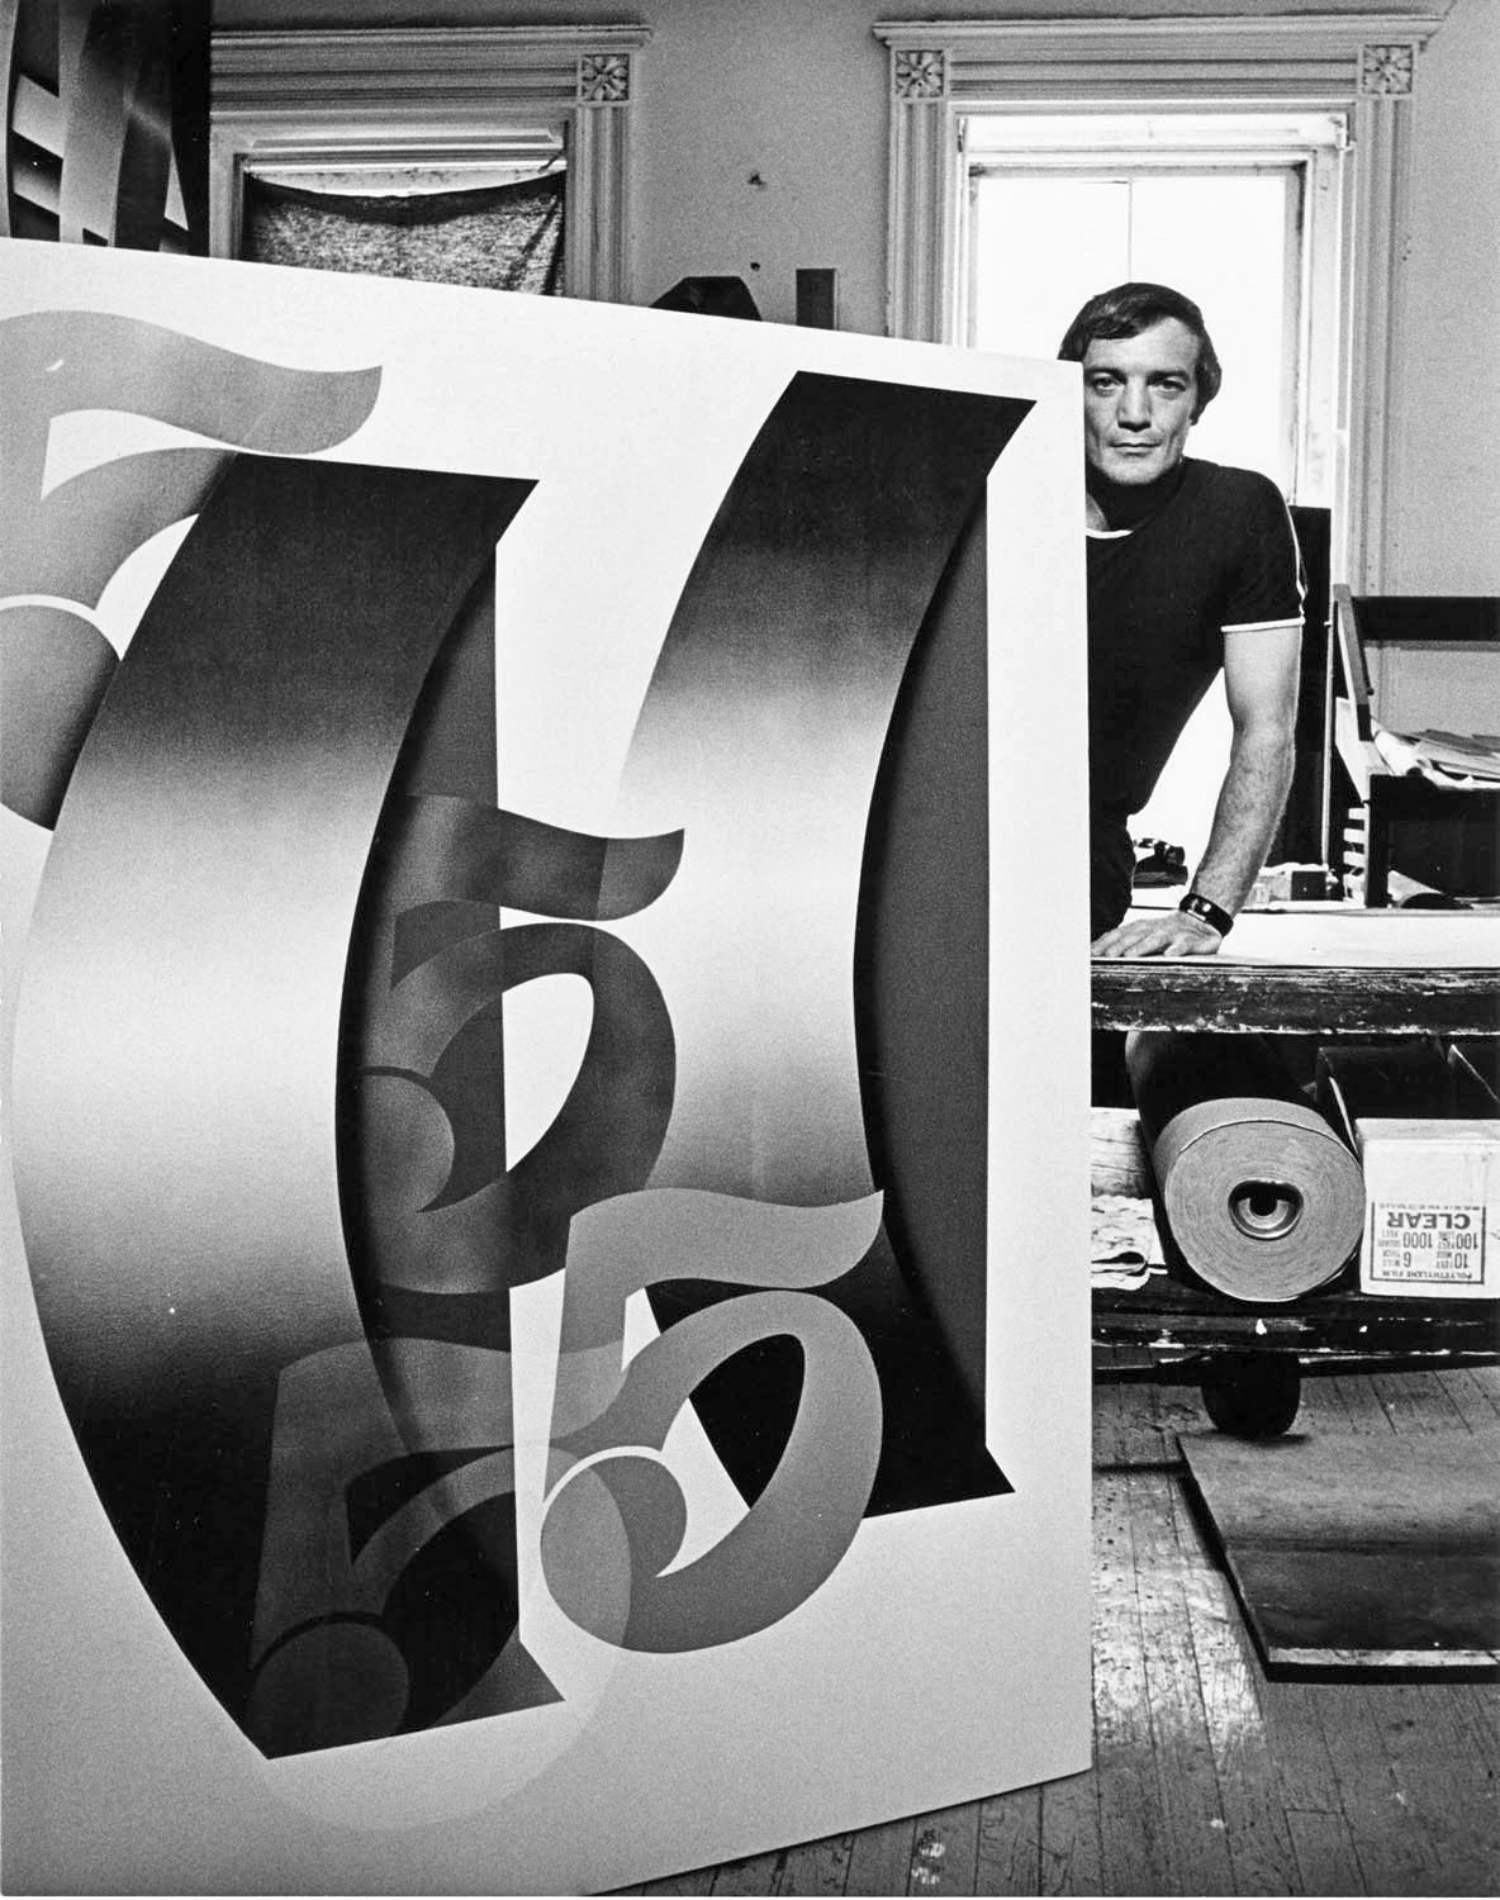 11 x 14" alte Silbergelatinefotografie des Pop-Künstlers Jack Bruca in seinem Atelier in Manhattan mit aktuellen Arbeiten, 1969. Signiert von Jack Mitchell auf der Rückseite des Drucks. Kommt direkt aus dem Jack Mitchell Archiv mit einem